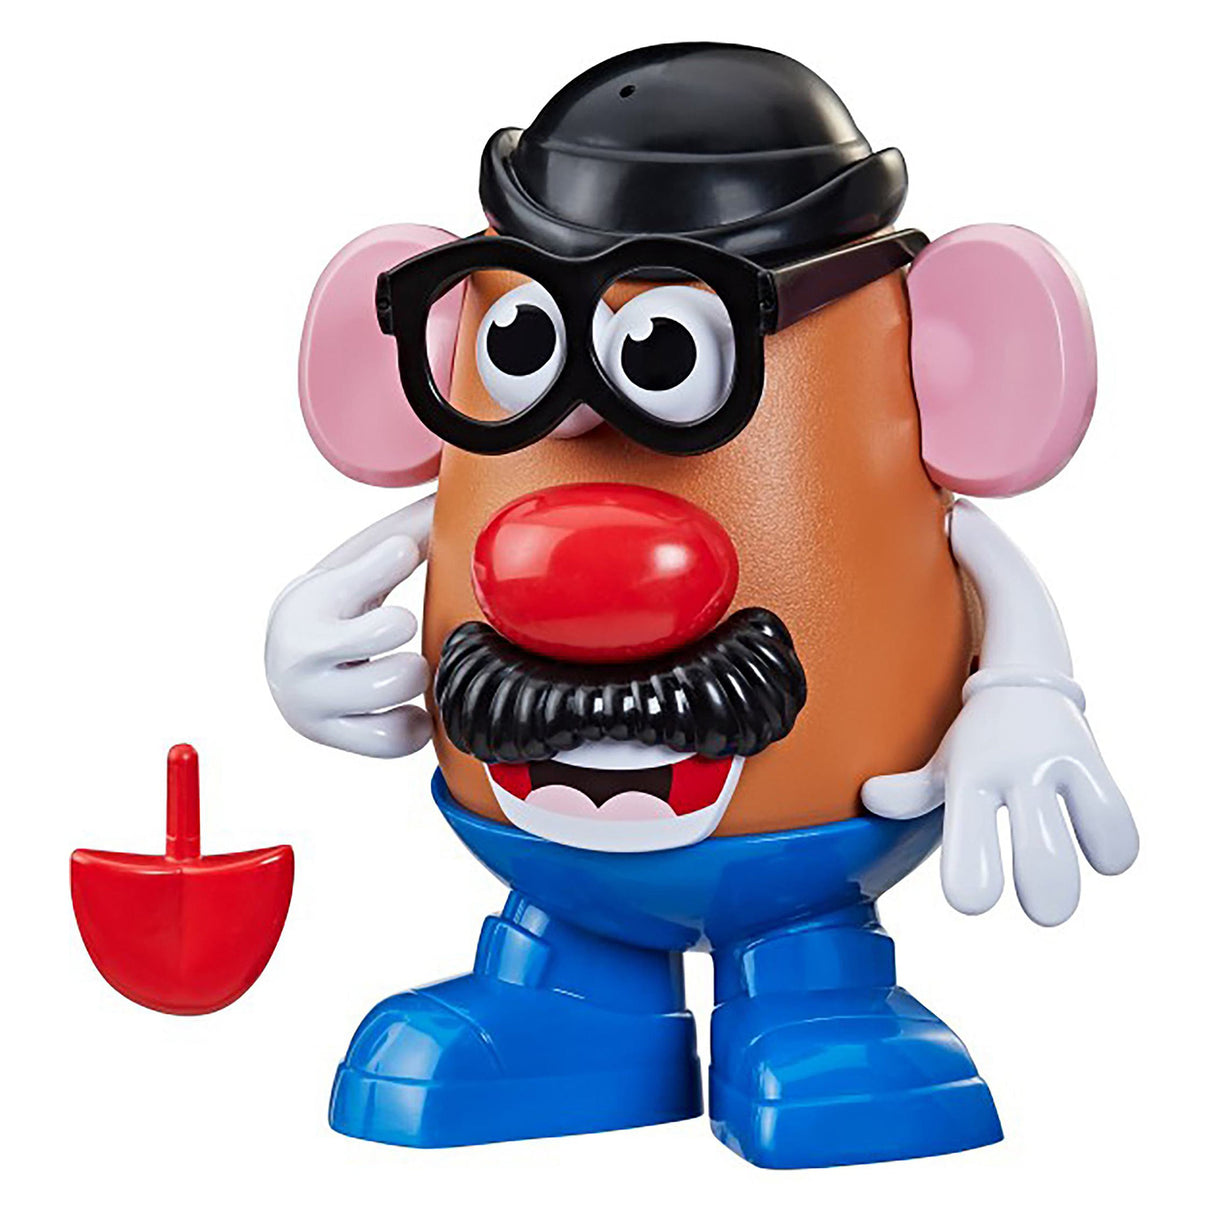 Potato Head - Mr Potato Head Classic